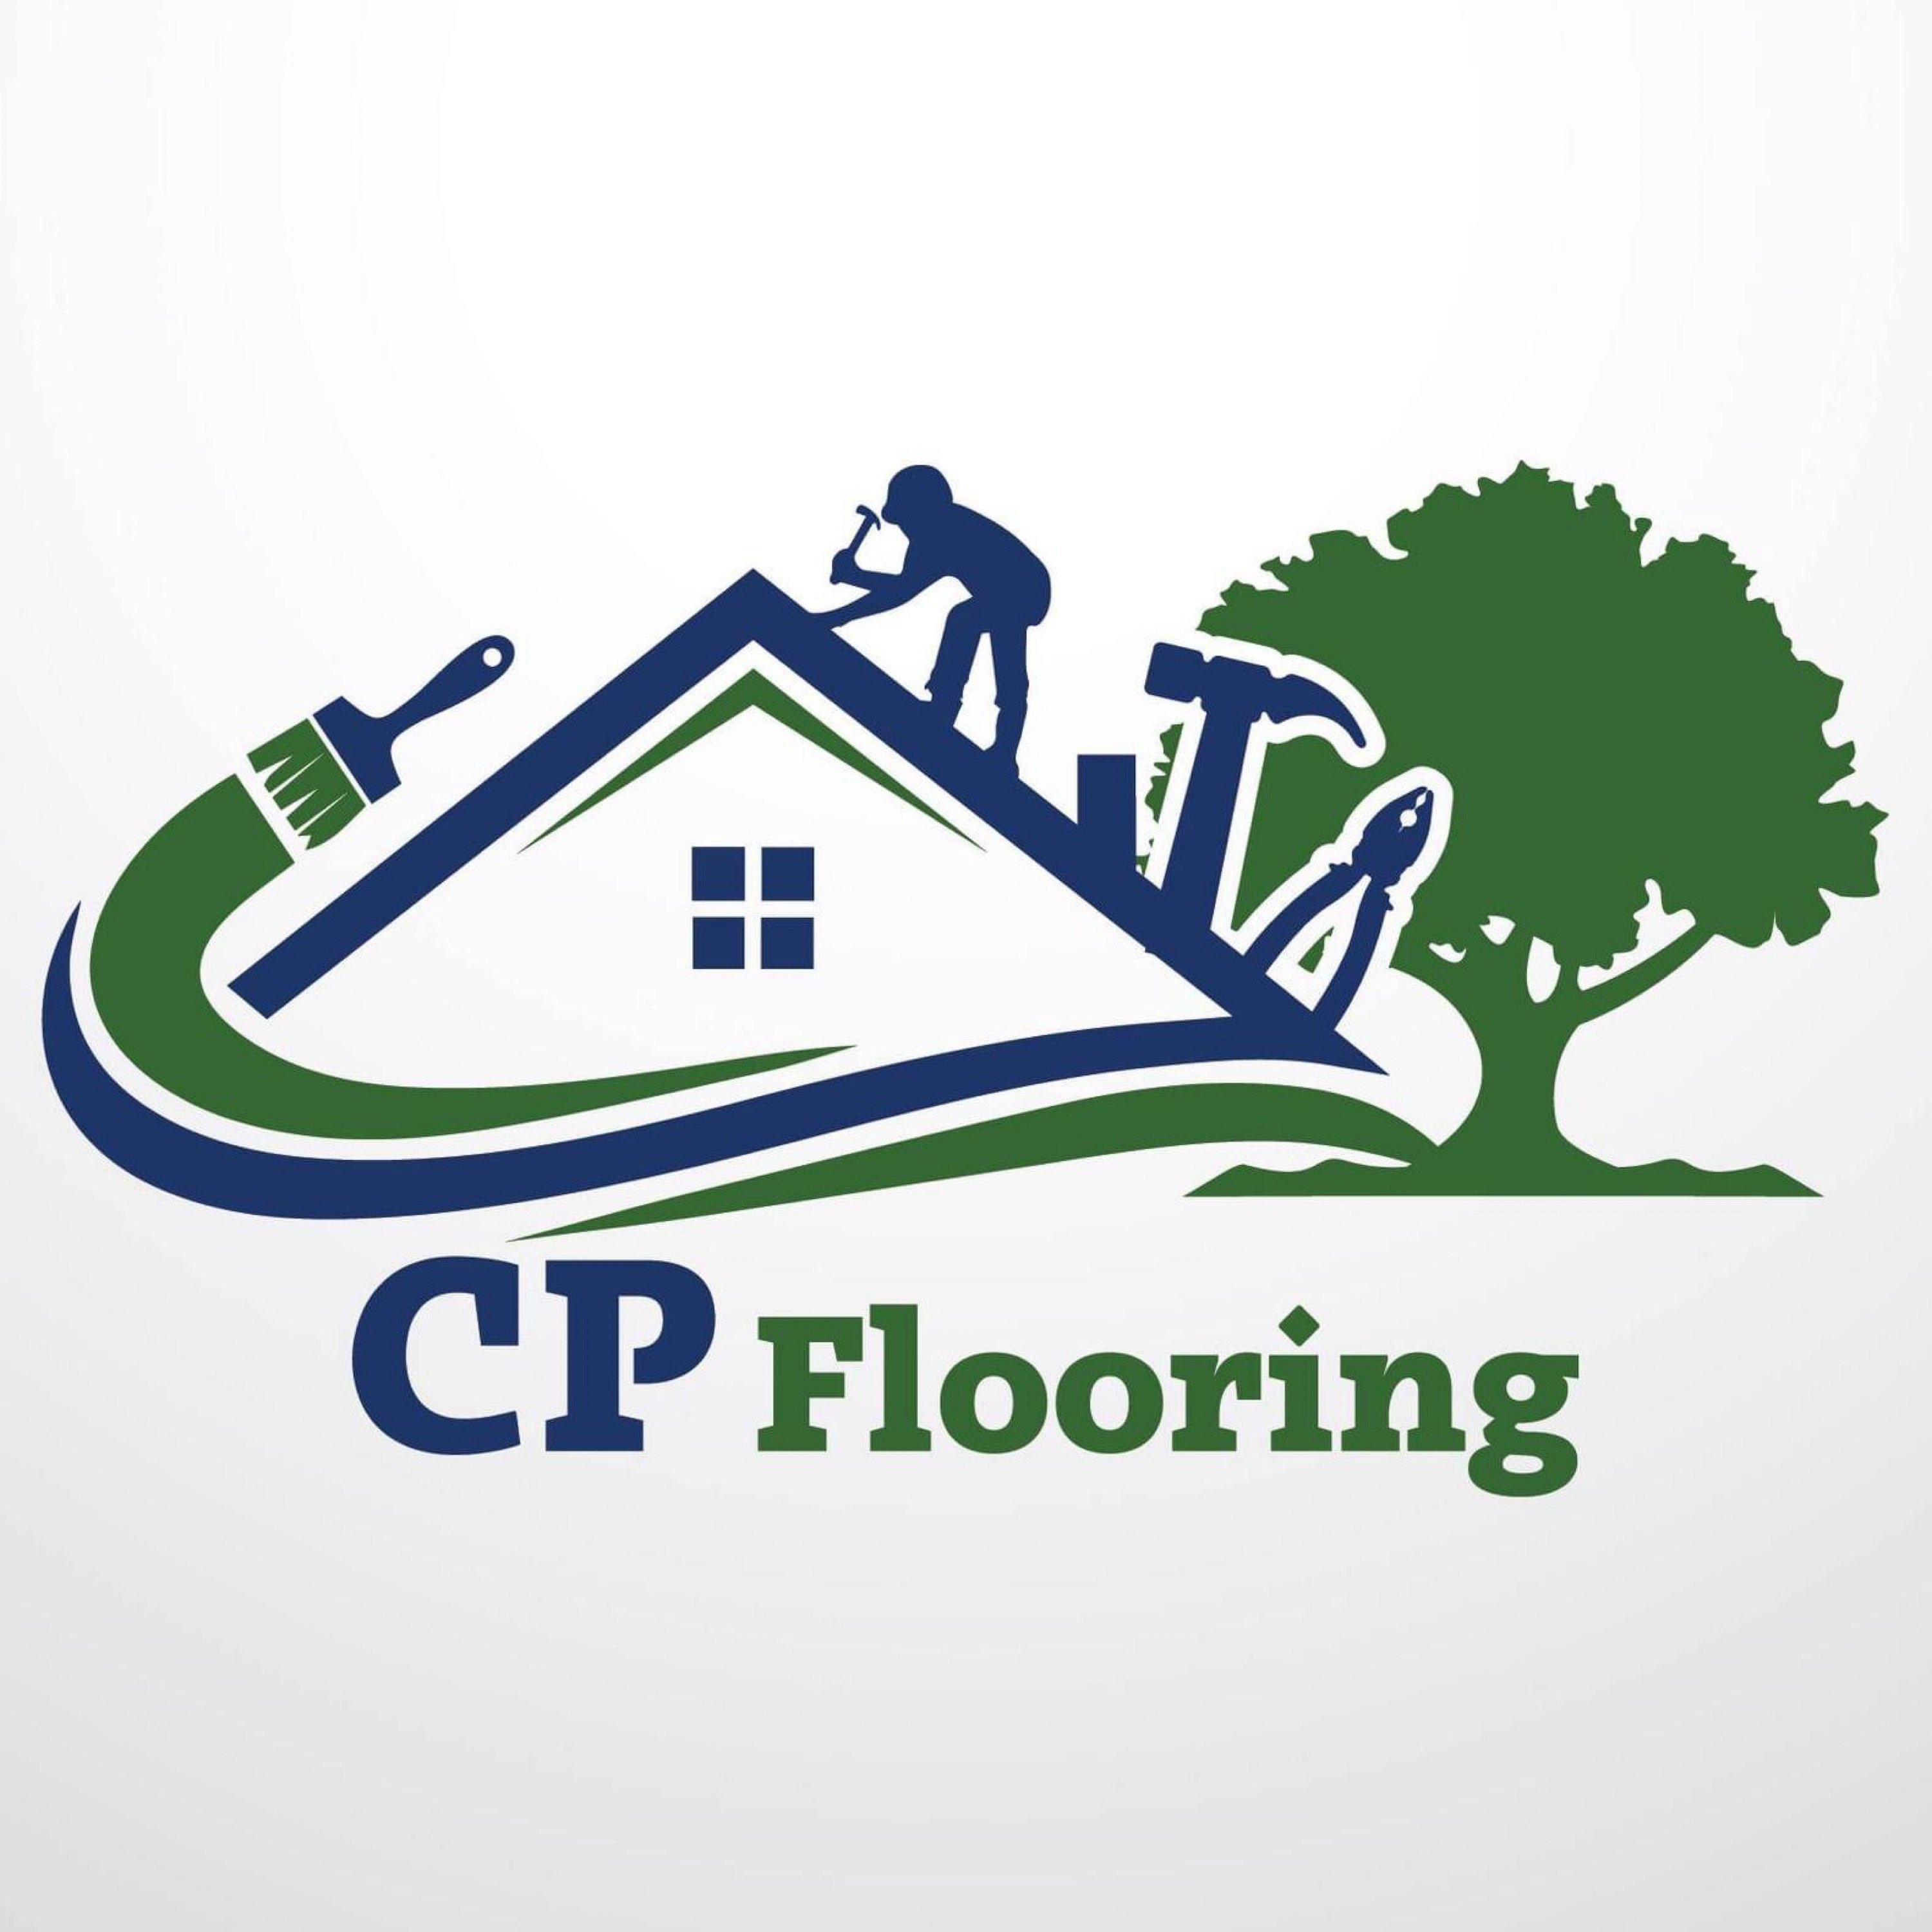 CP Flooring Services Logo